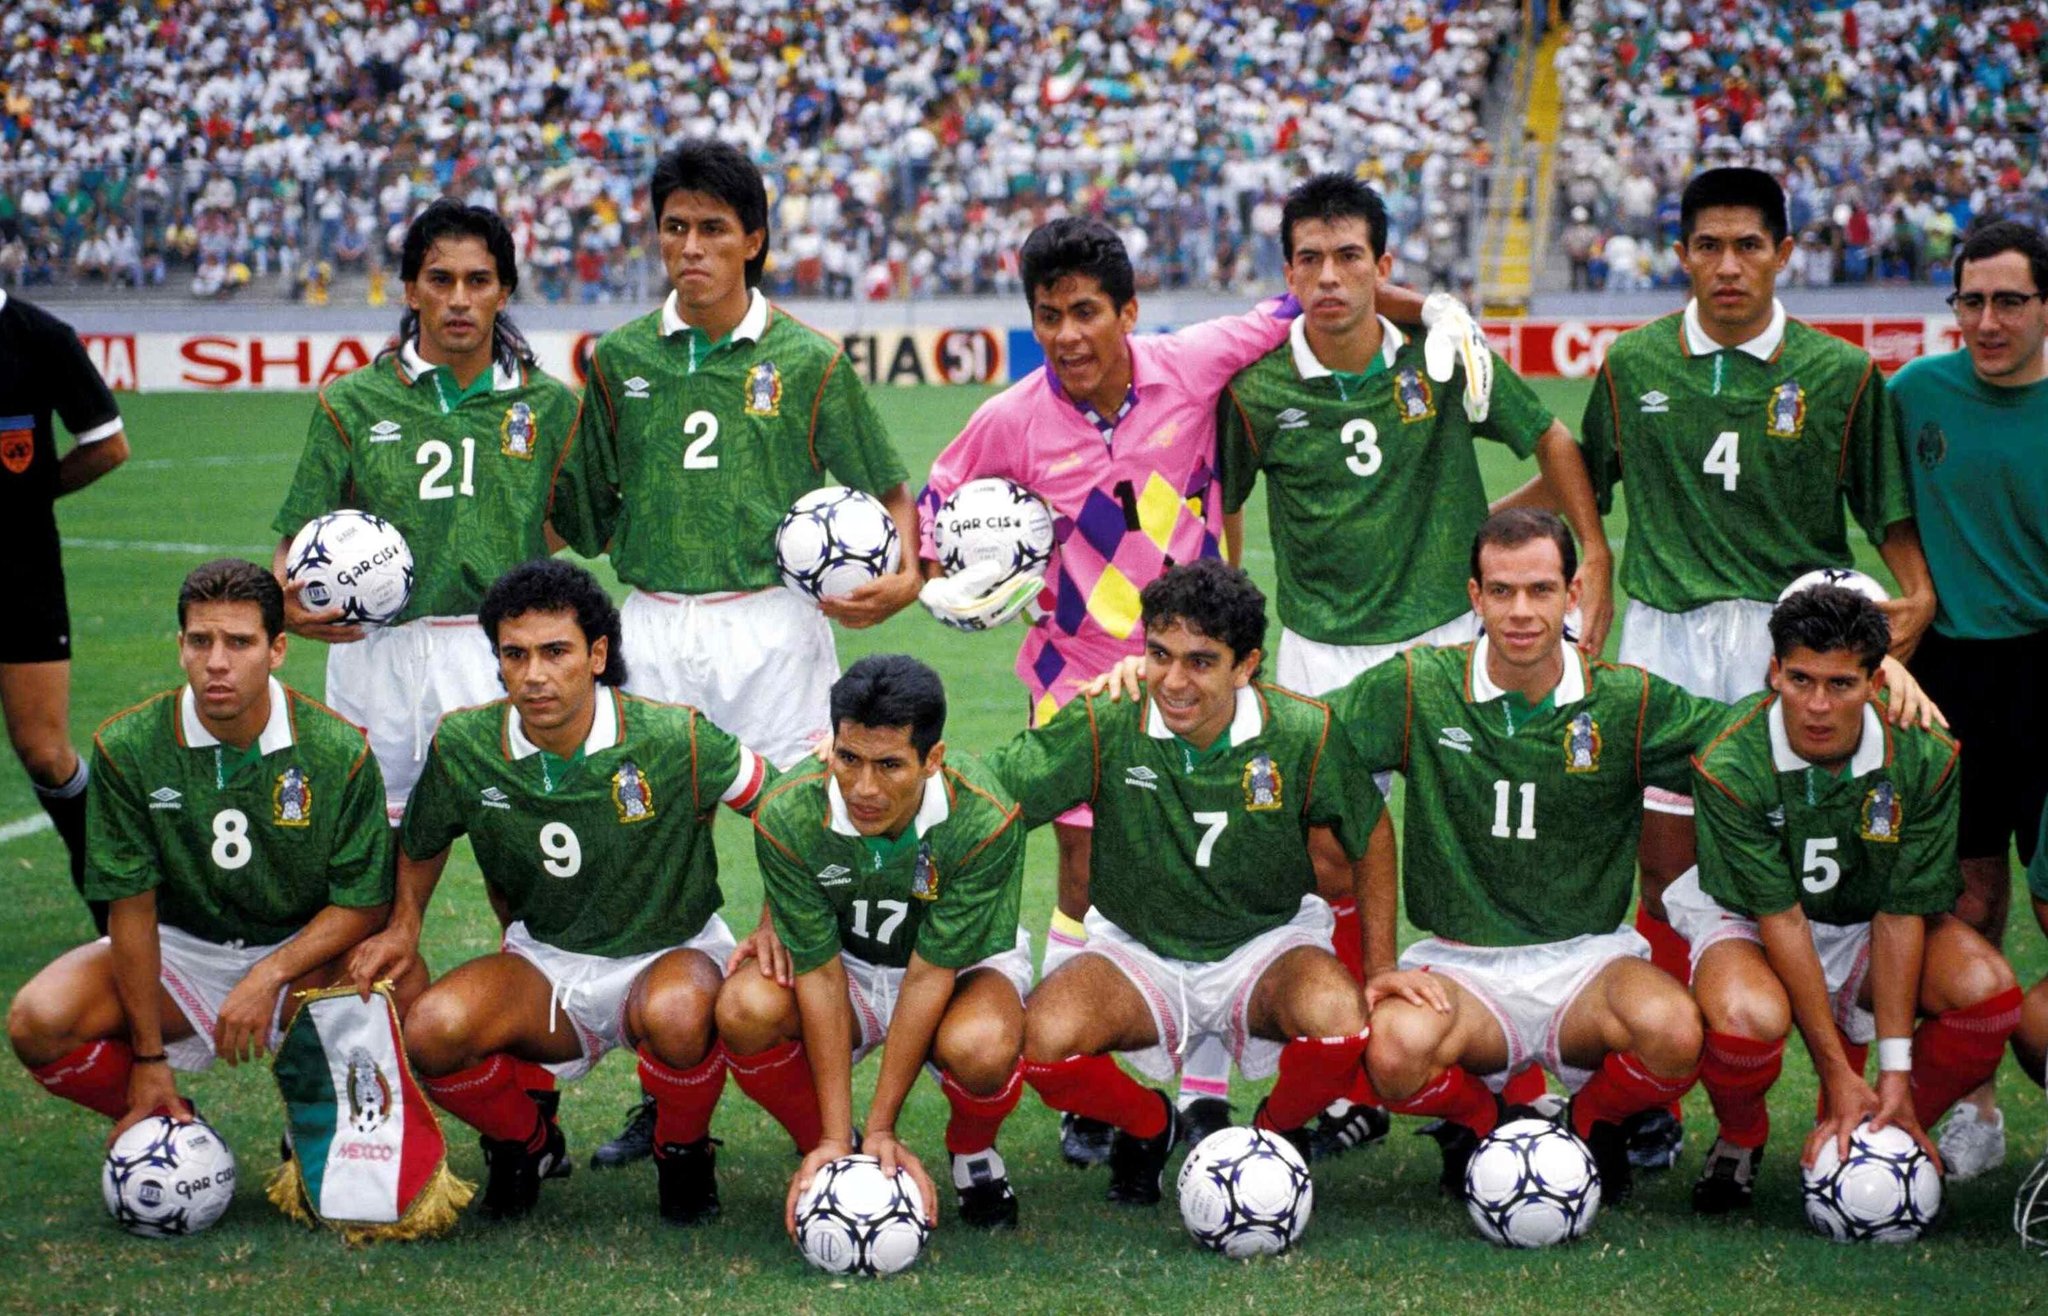 Solo en 1986 México ha clasificado a los cuartos de final de la Copa Mundial (Foto: Twitter@alexbachoc)